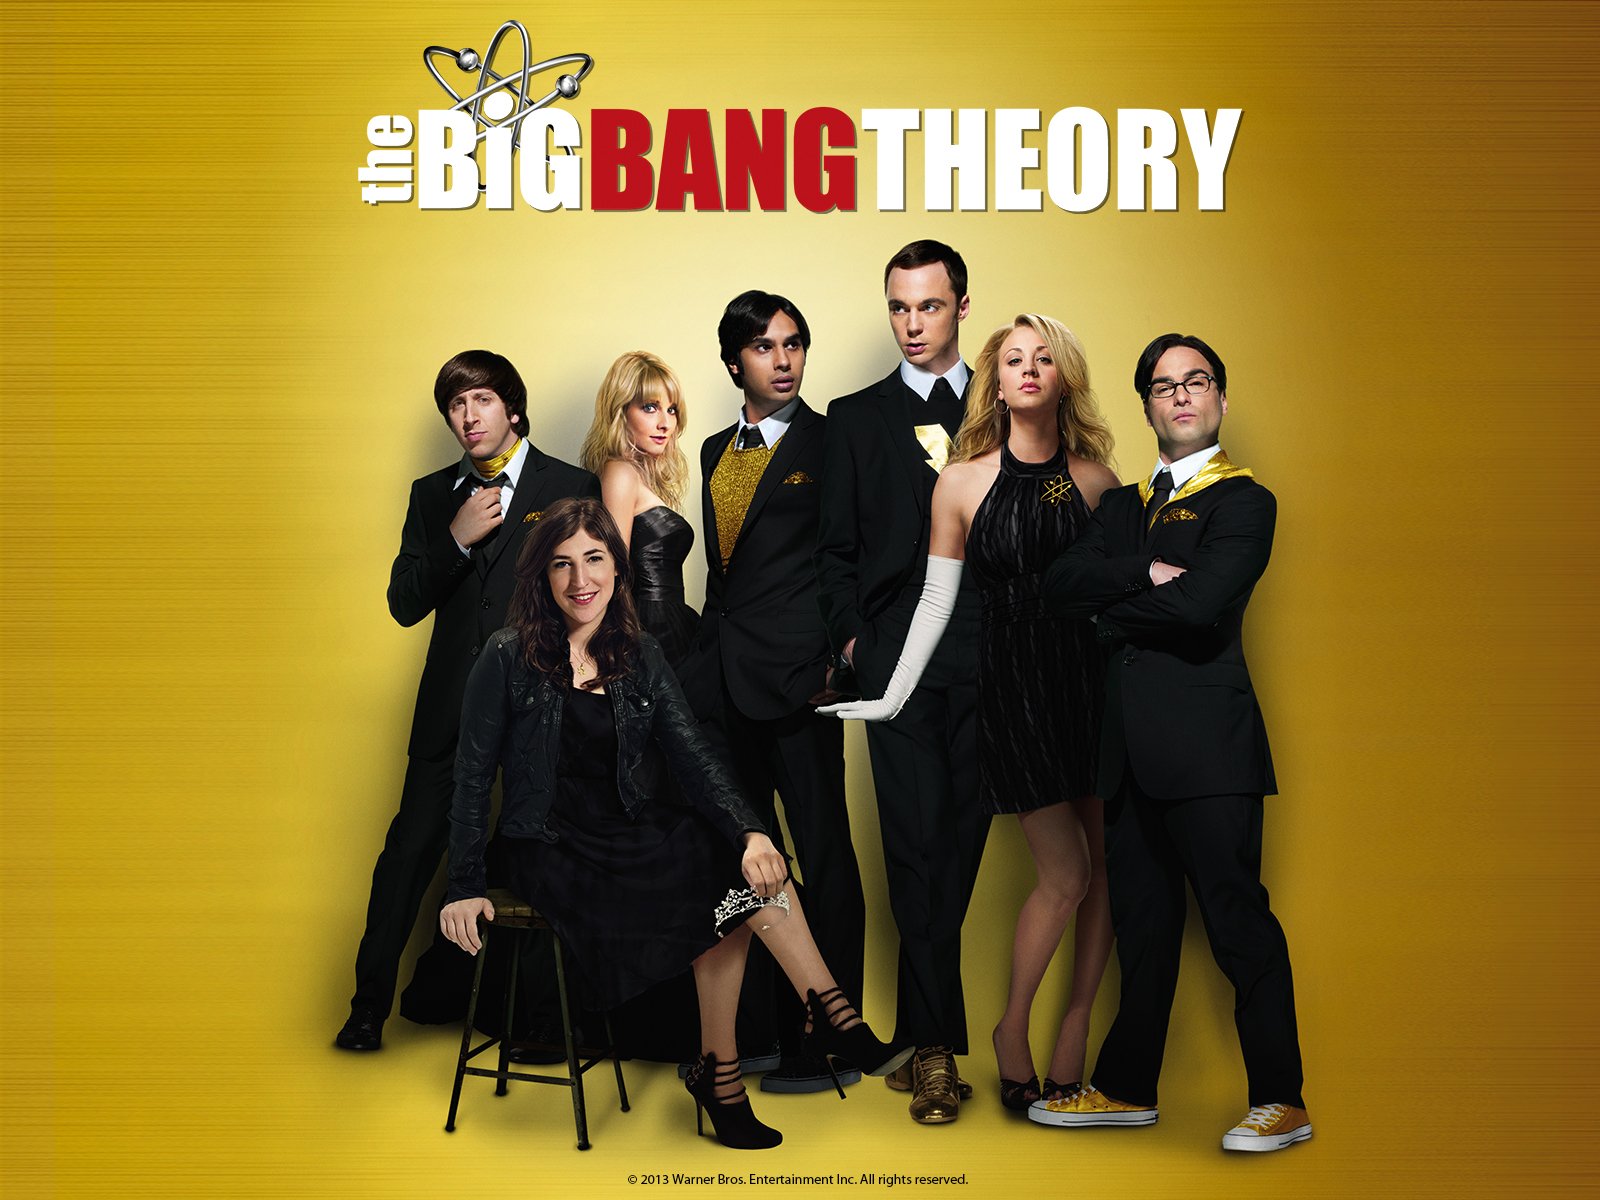 Big Bang Theory Season 8 Poster - HD Wallpaper 